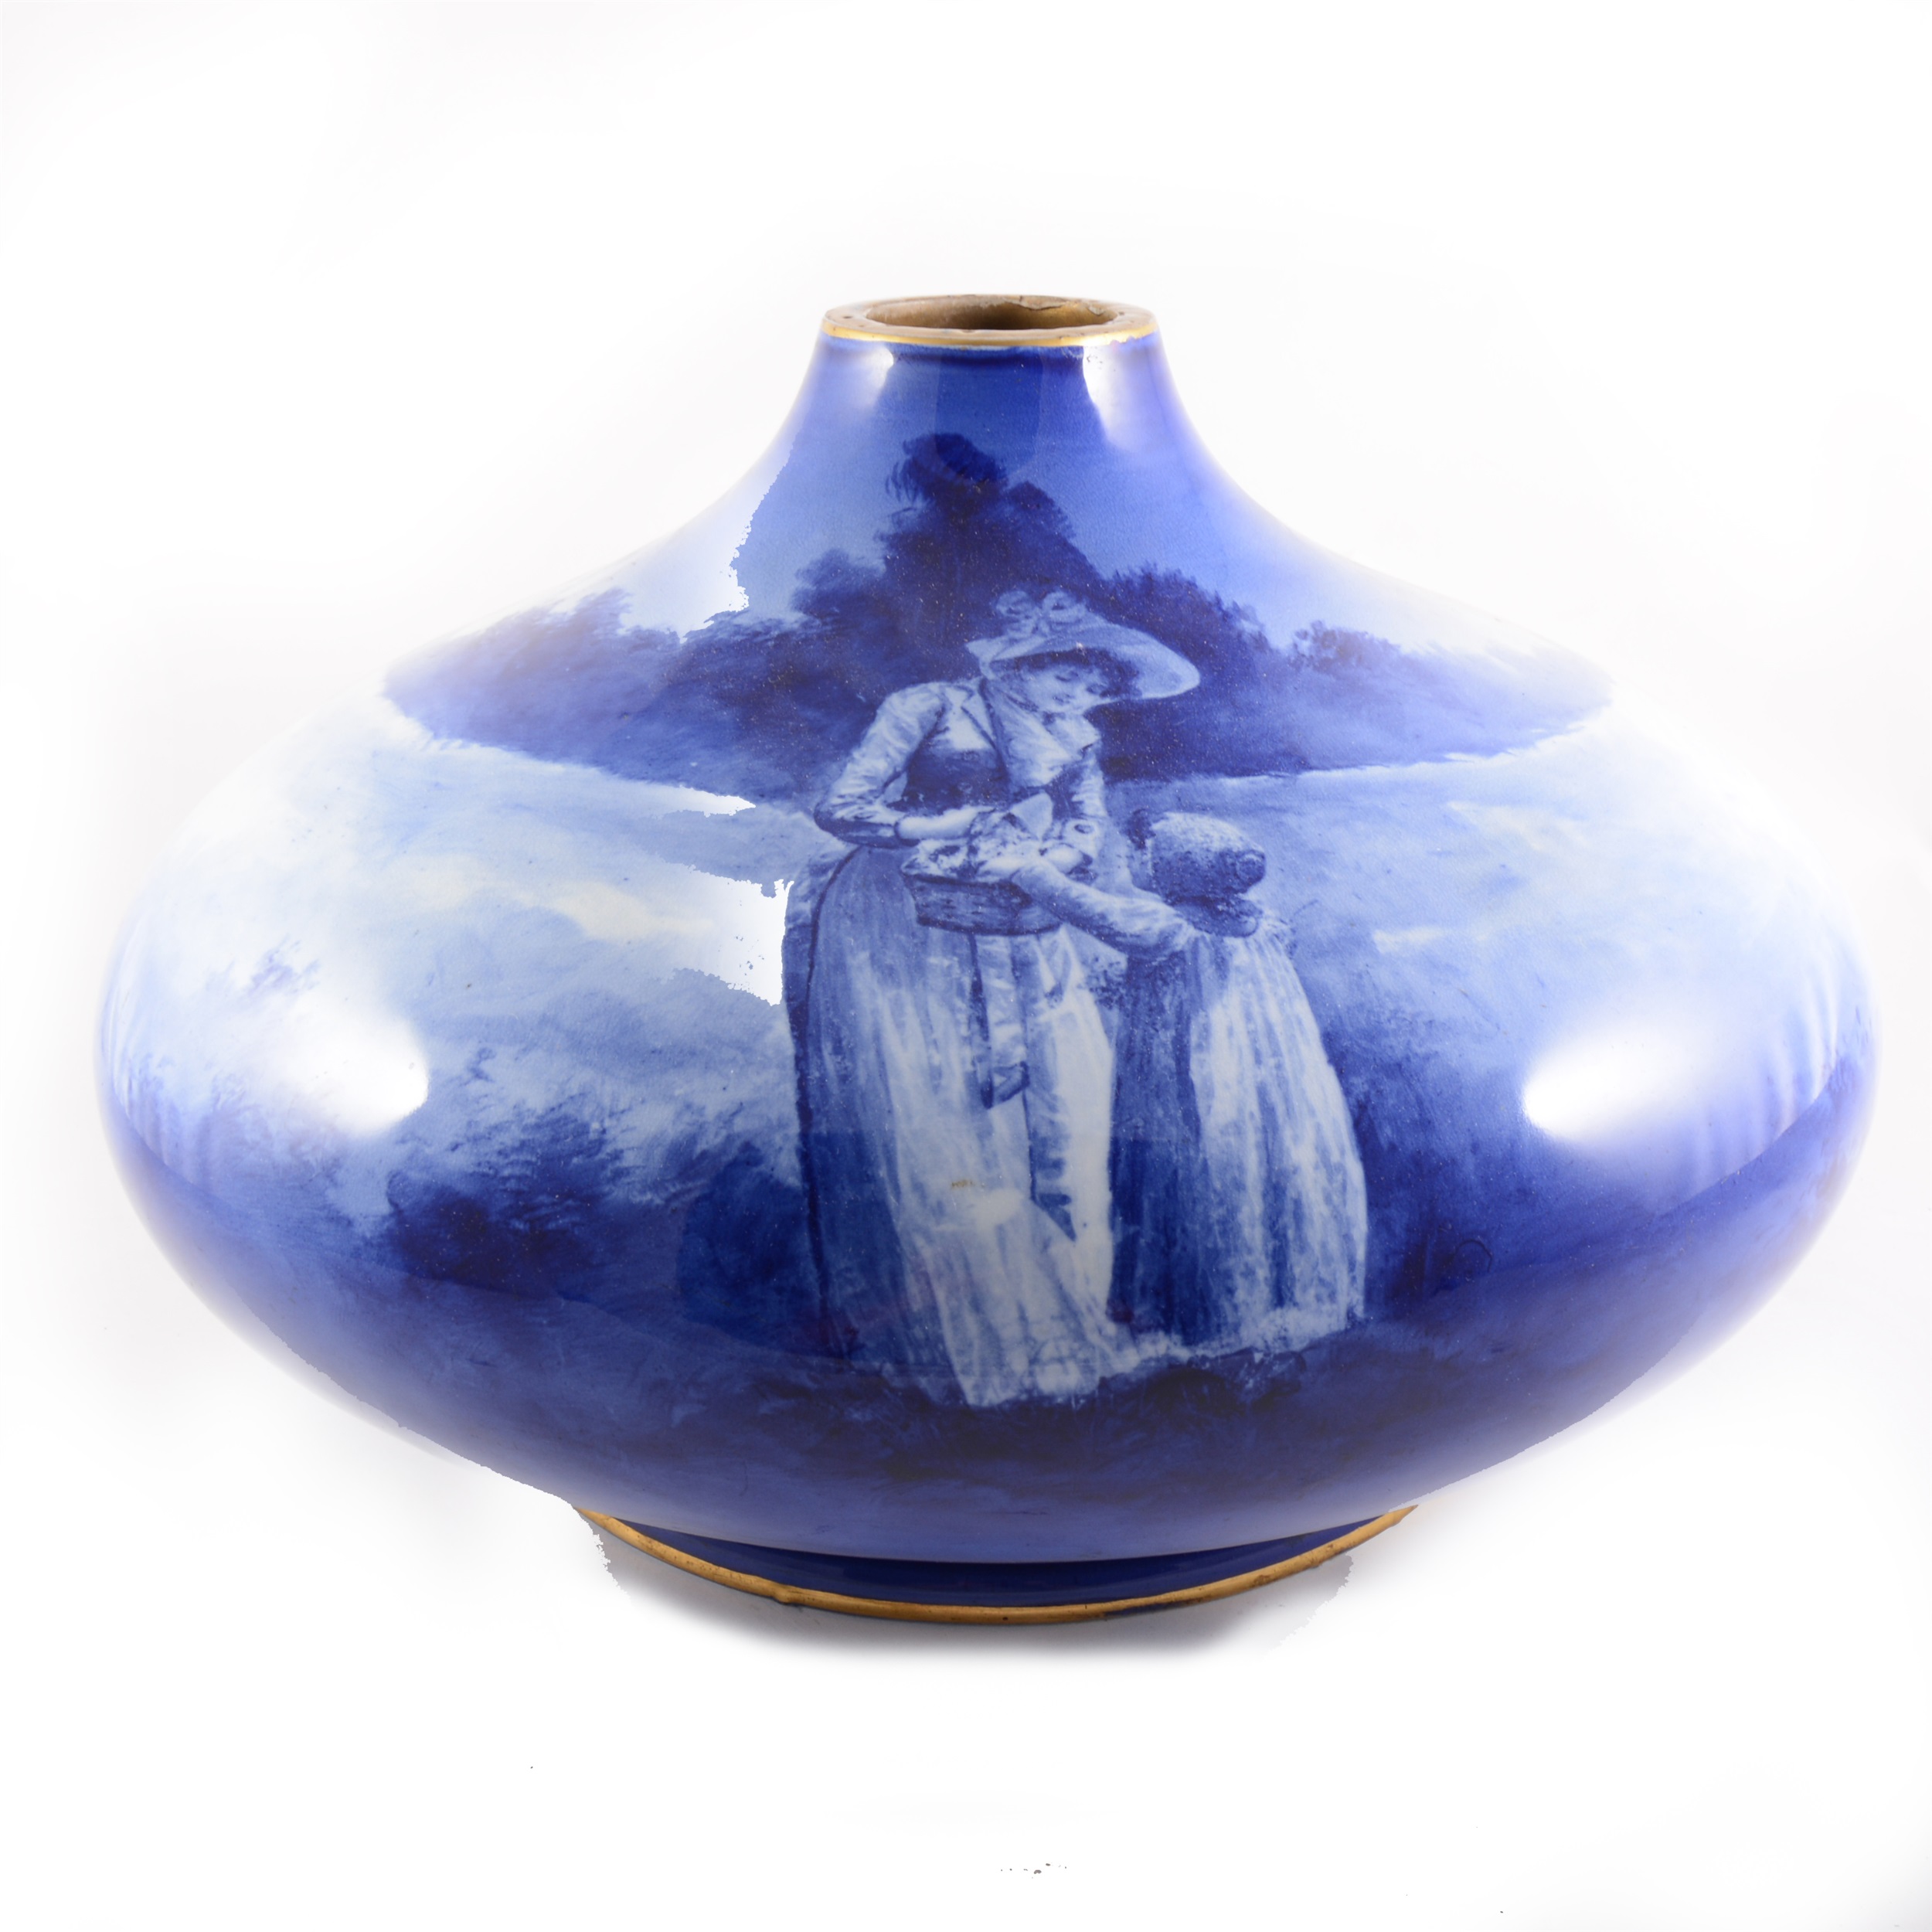 A large pottery vase, probably Doulton